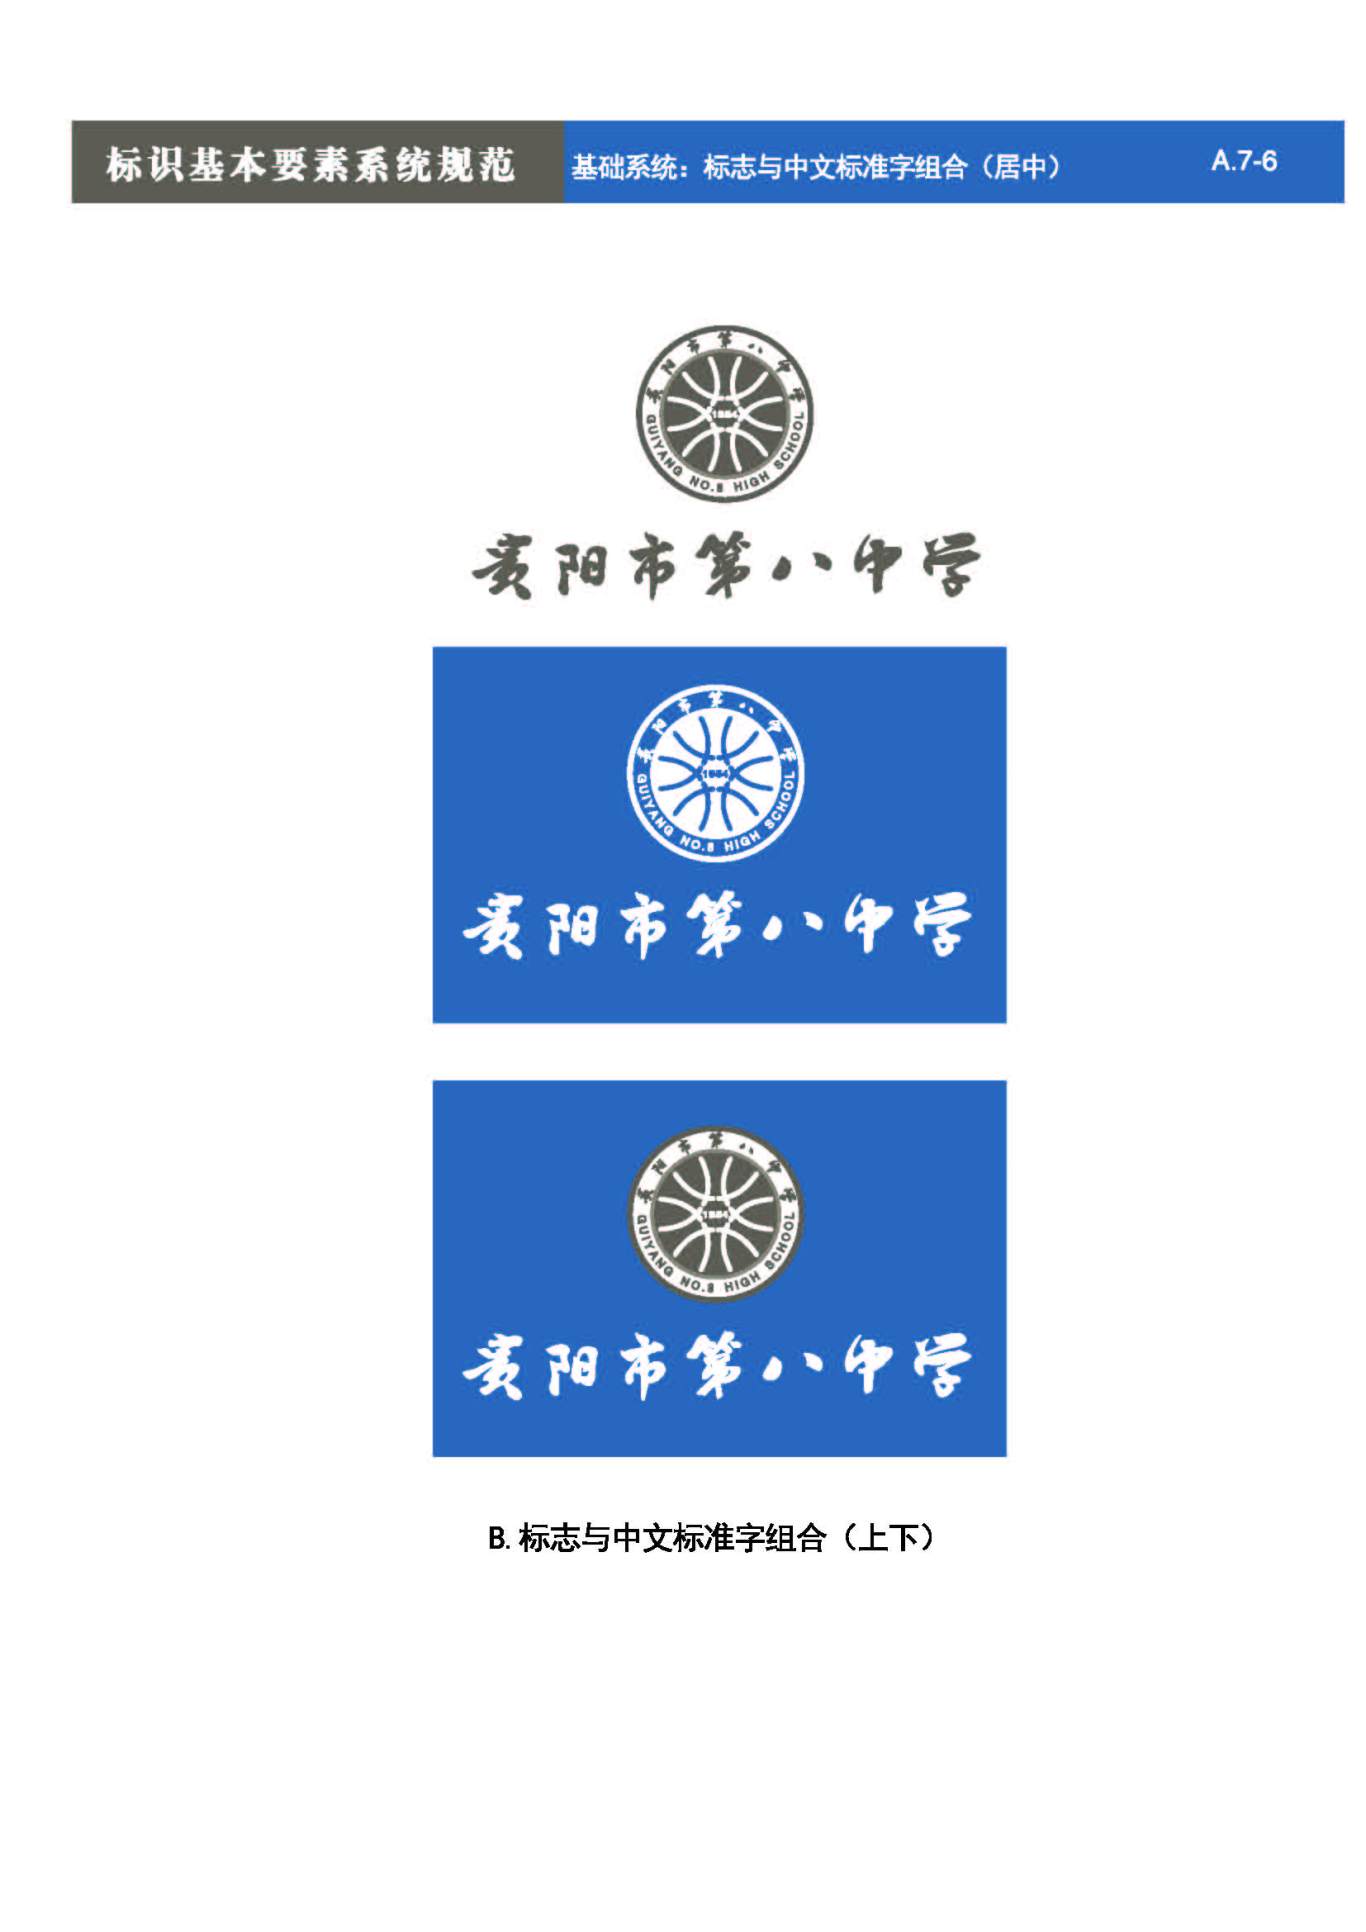 貴陽第八中學Logo、VIS設計圖27